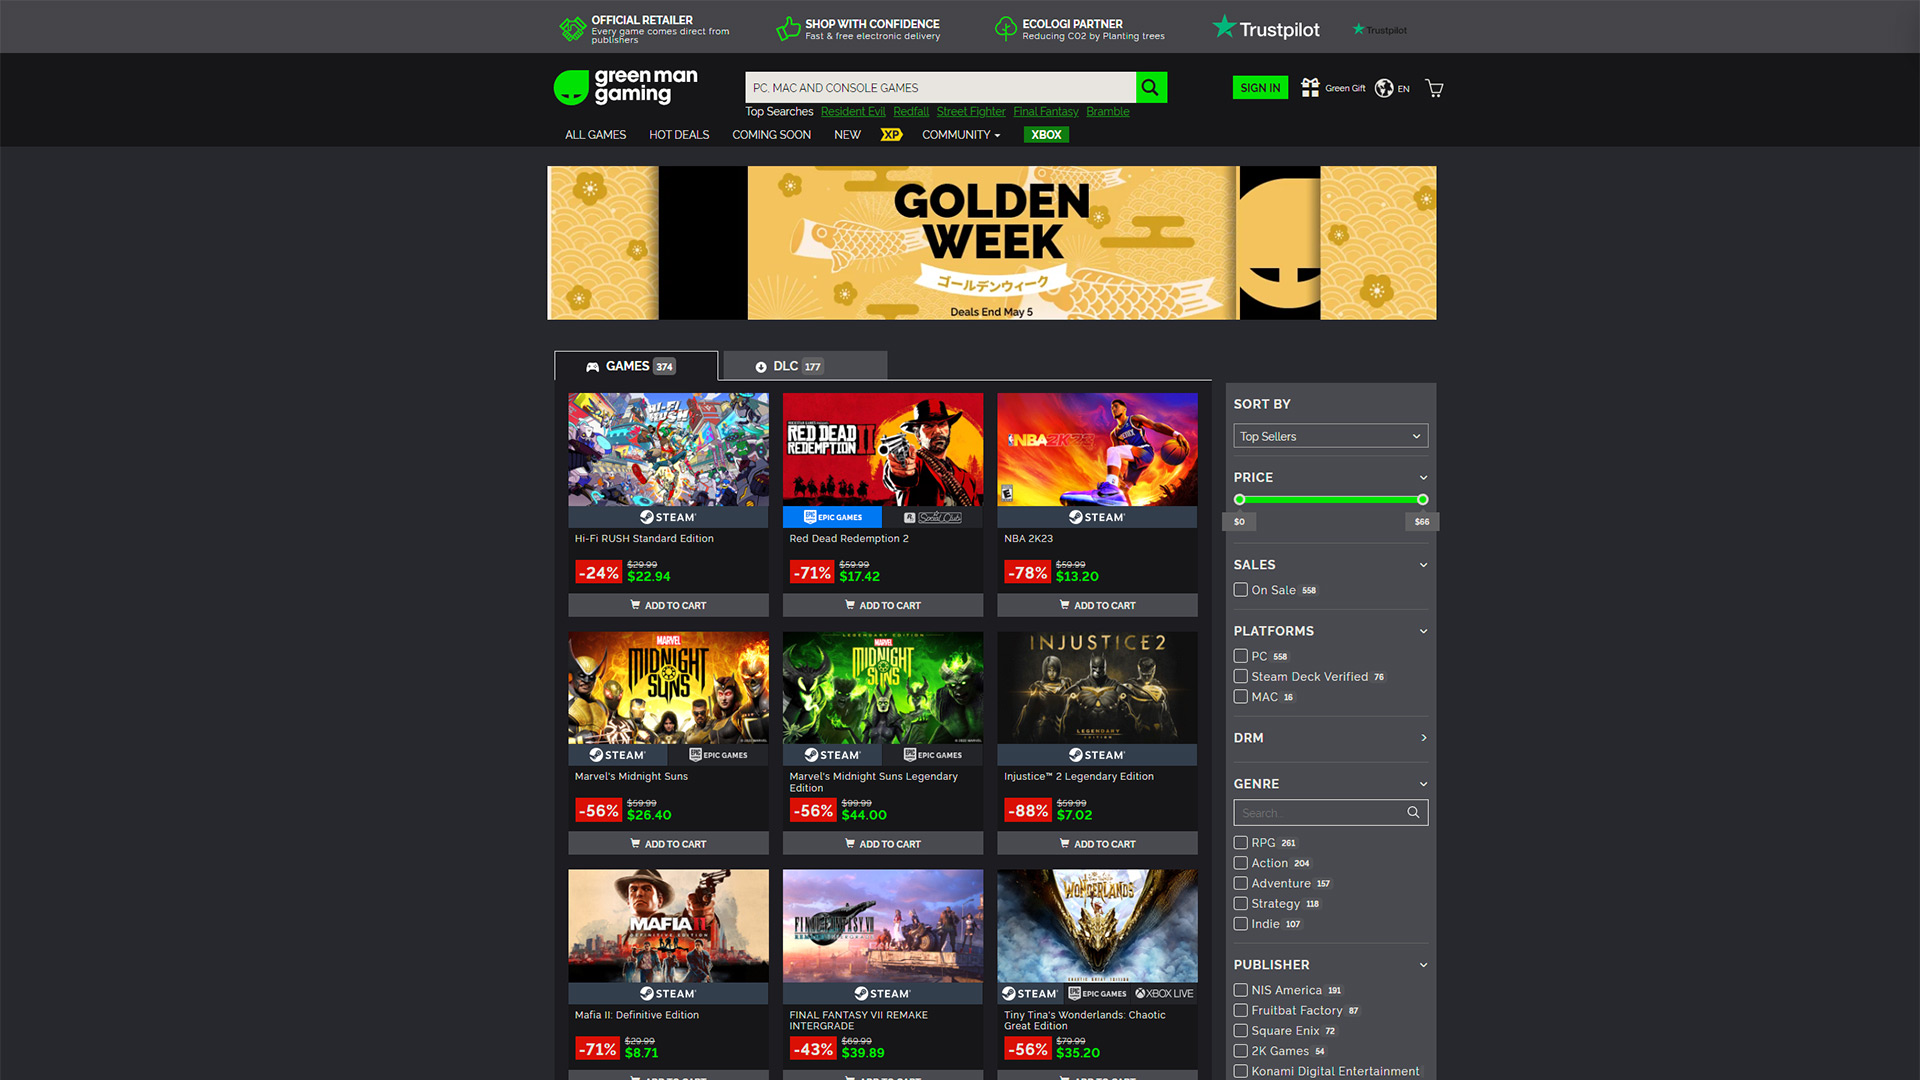 Green Man Gaming Golden Week Sale